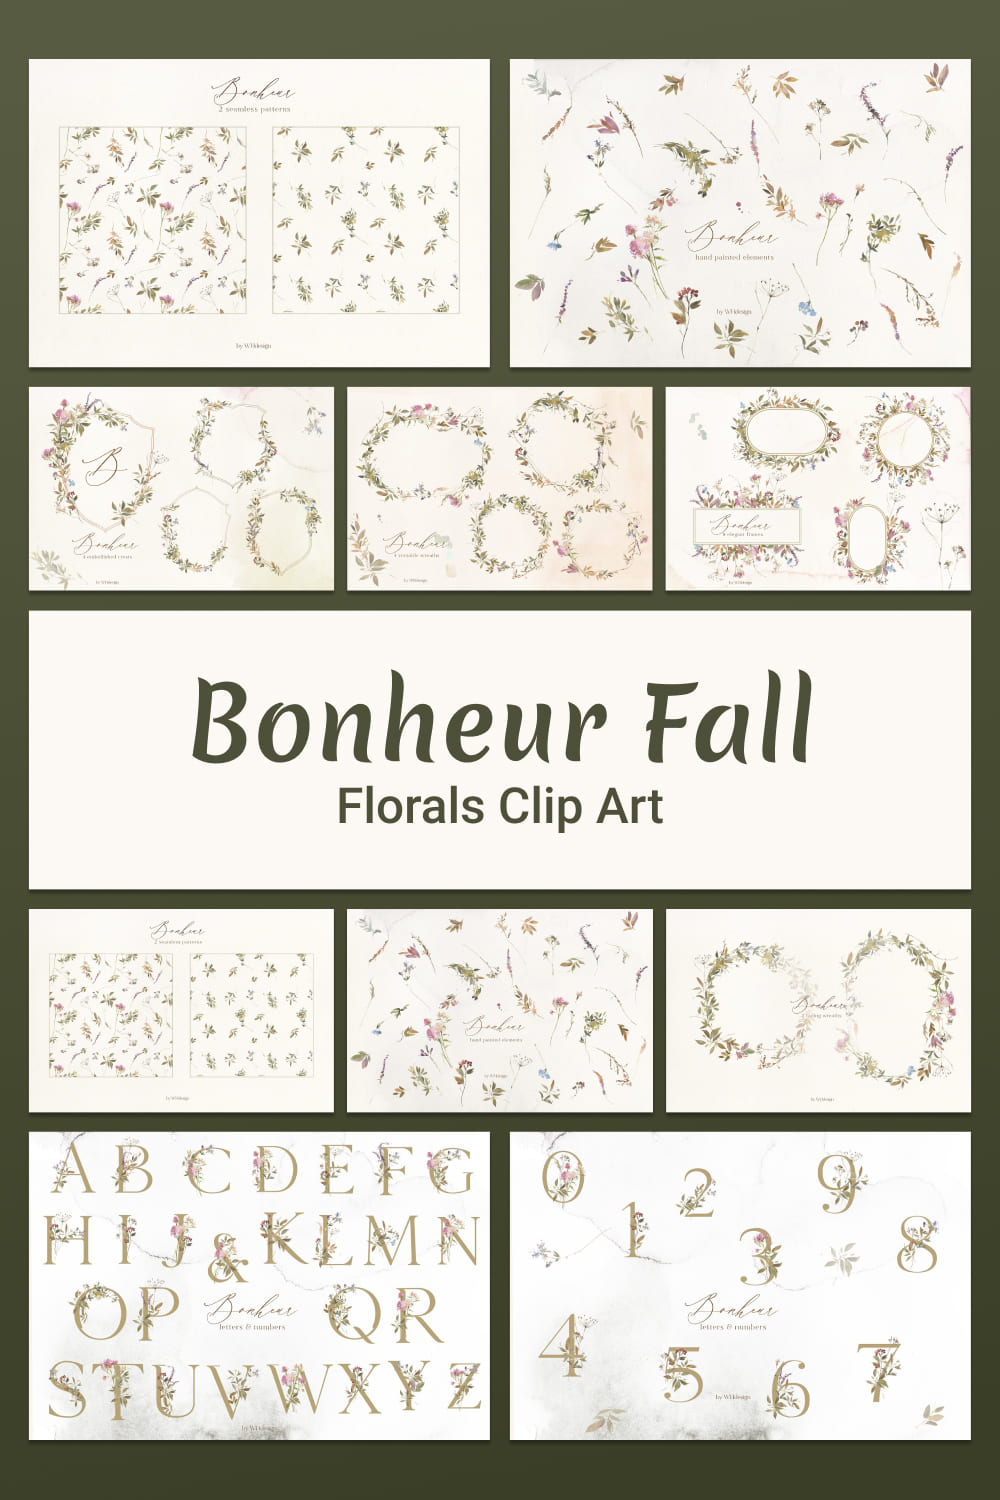 bonheur fall florals clip art, handdrawn elements.